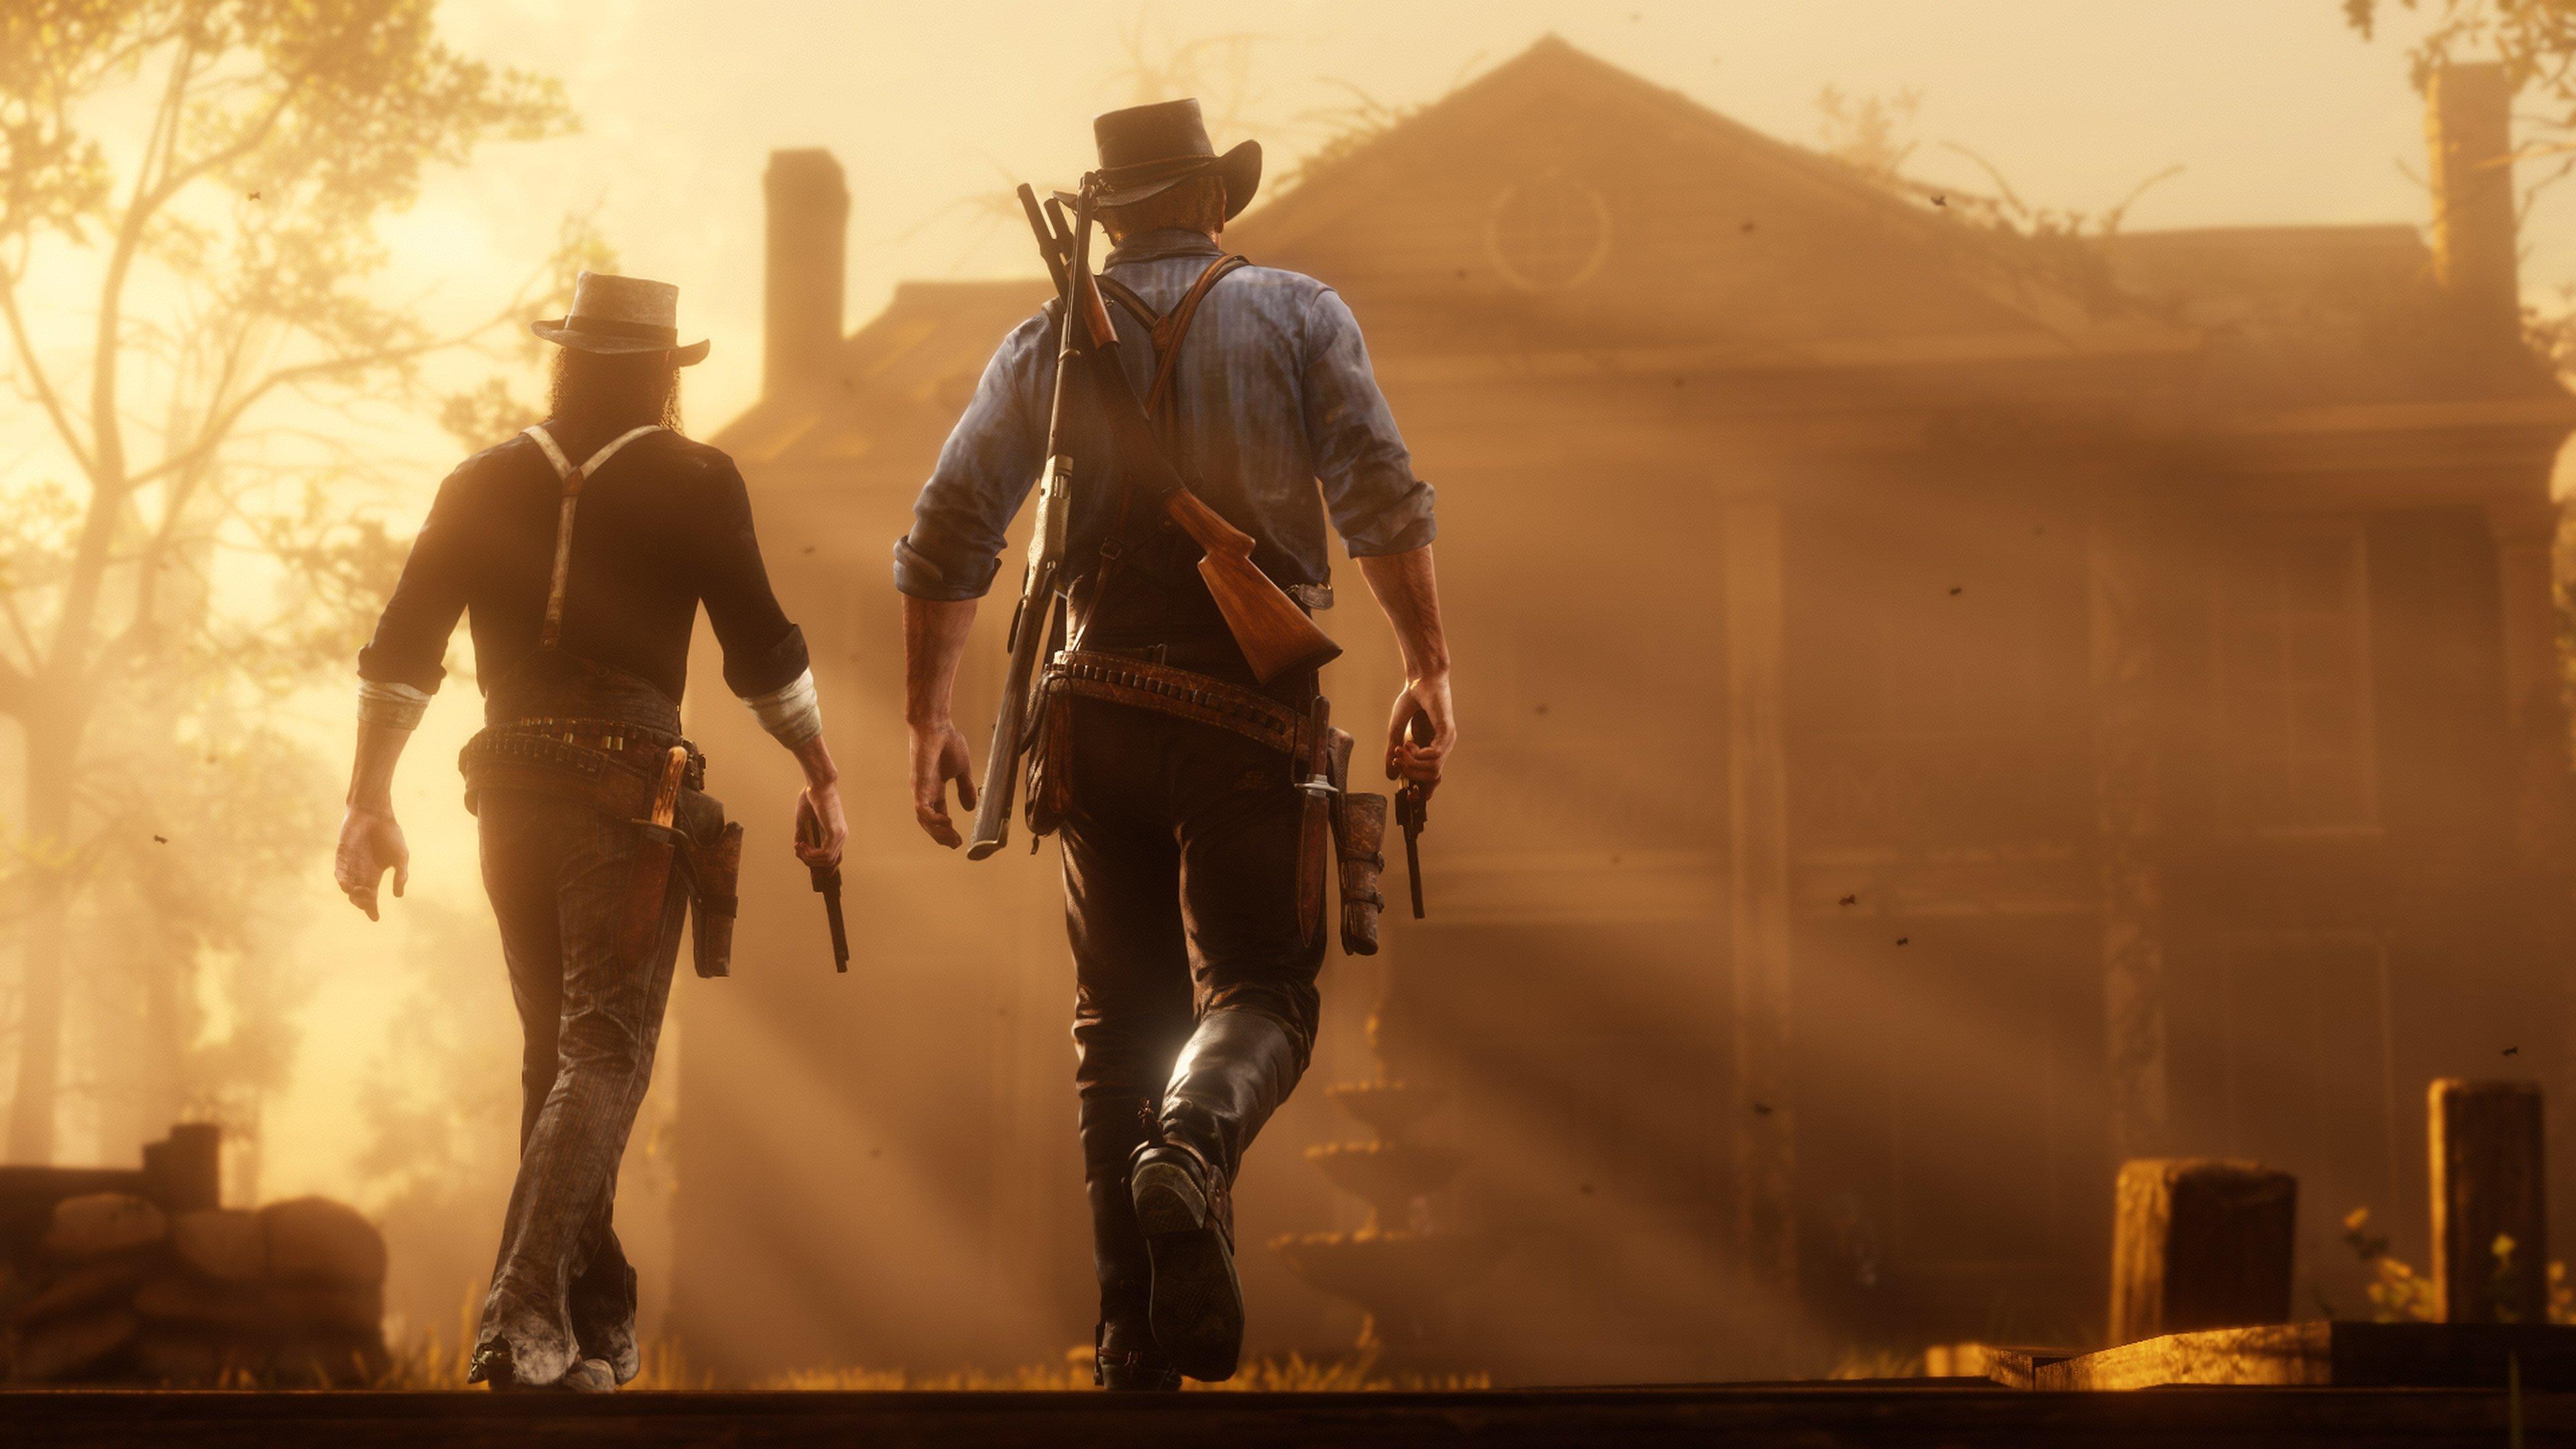 100+] Red Dead Redemption 2 Desktop Backgrounds